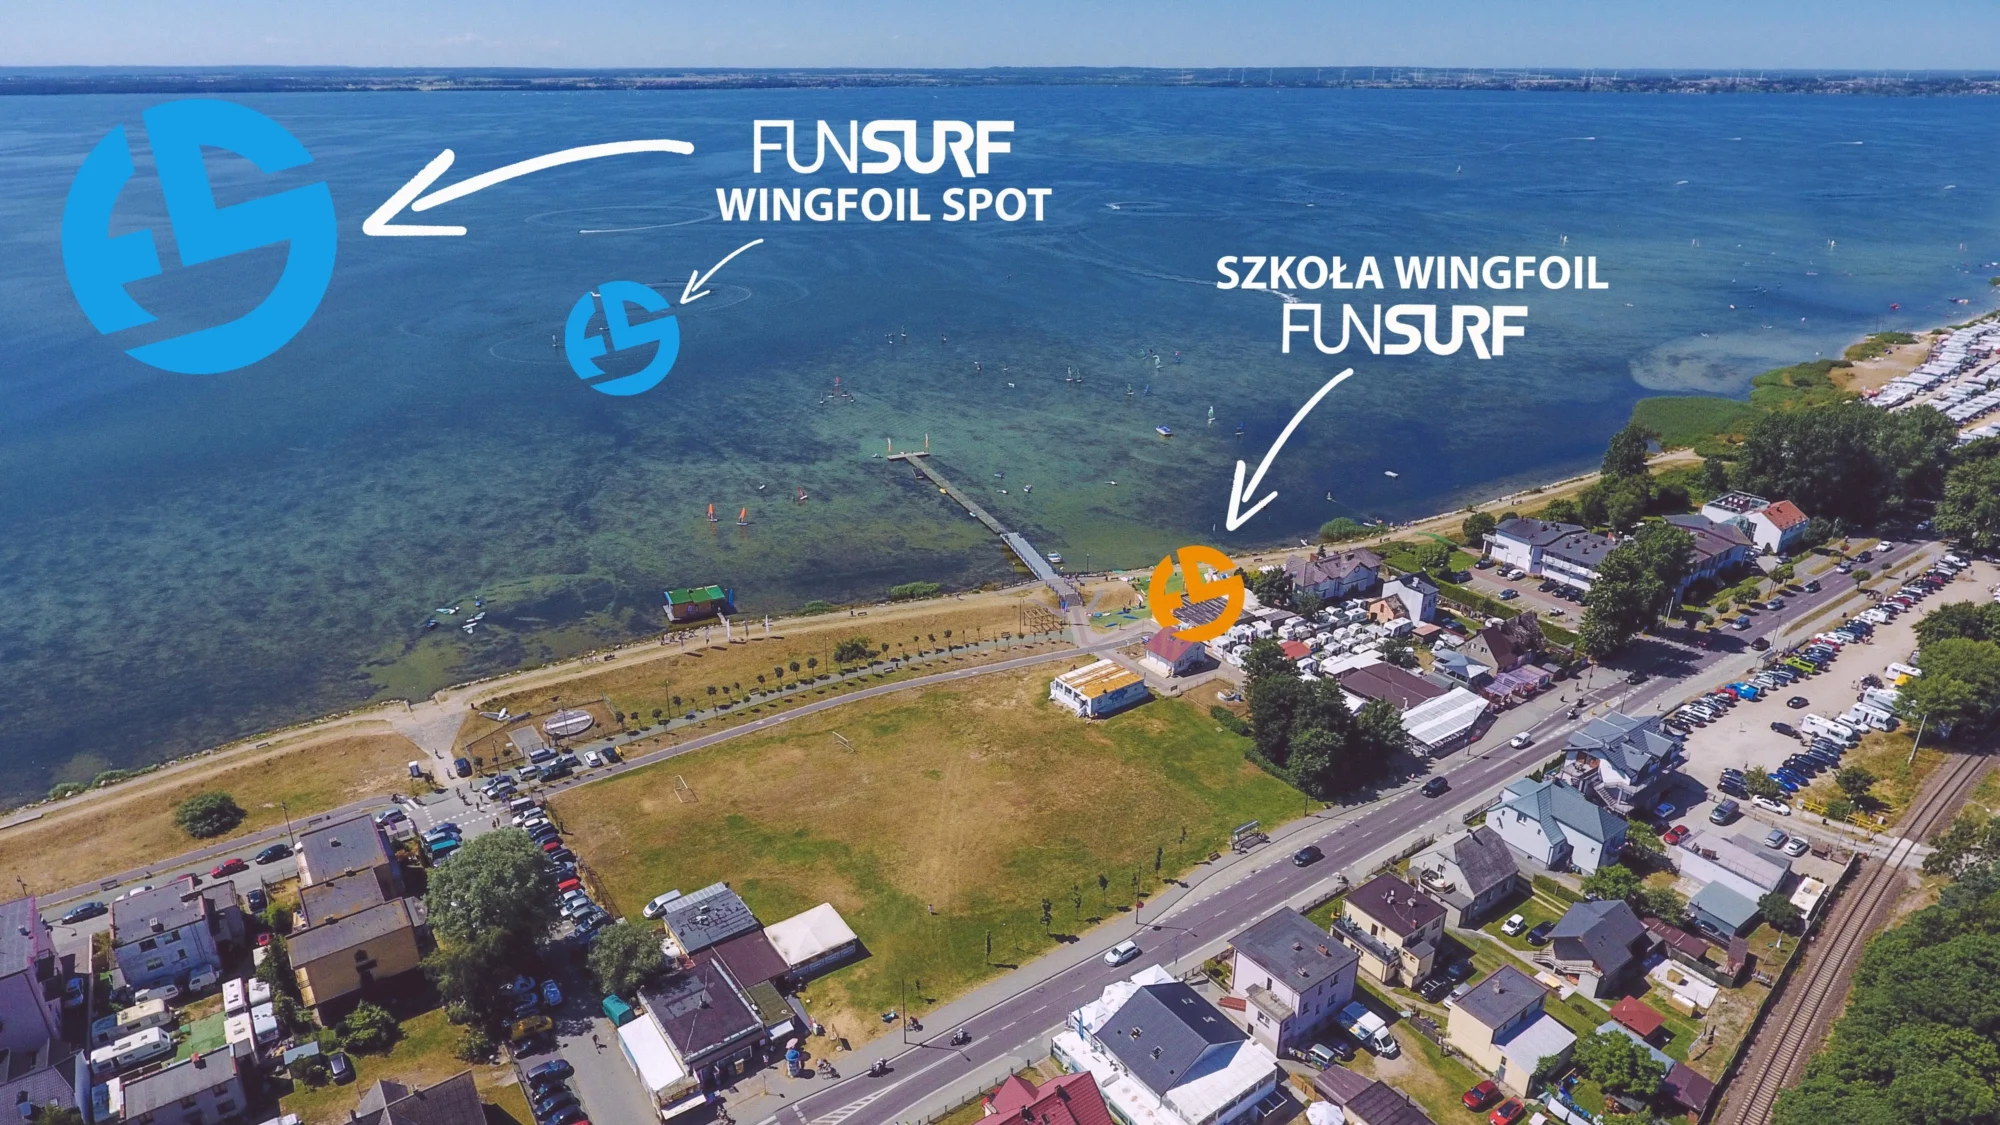 WINGFOIL_WINGSURFING-SPOT-FUNSURF-szkoła-wingfoila-FunSurf